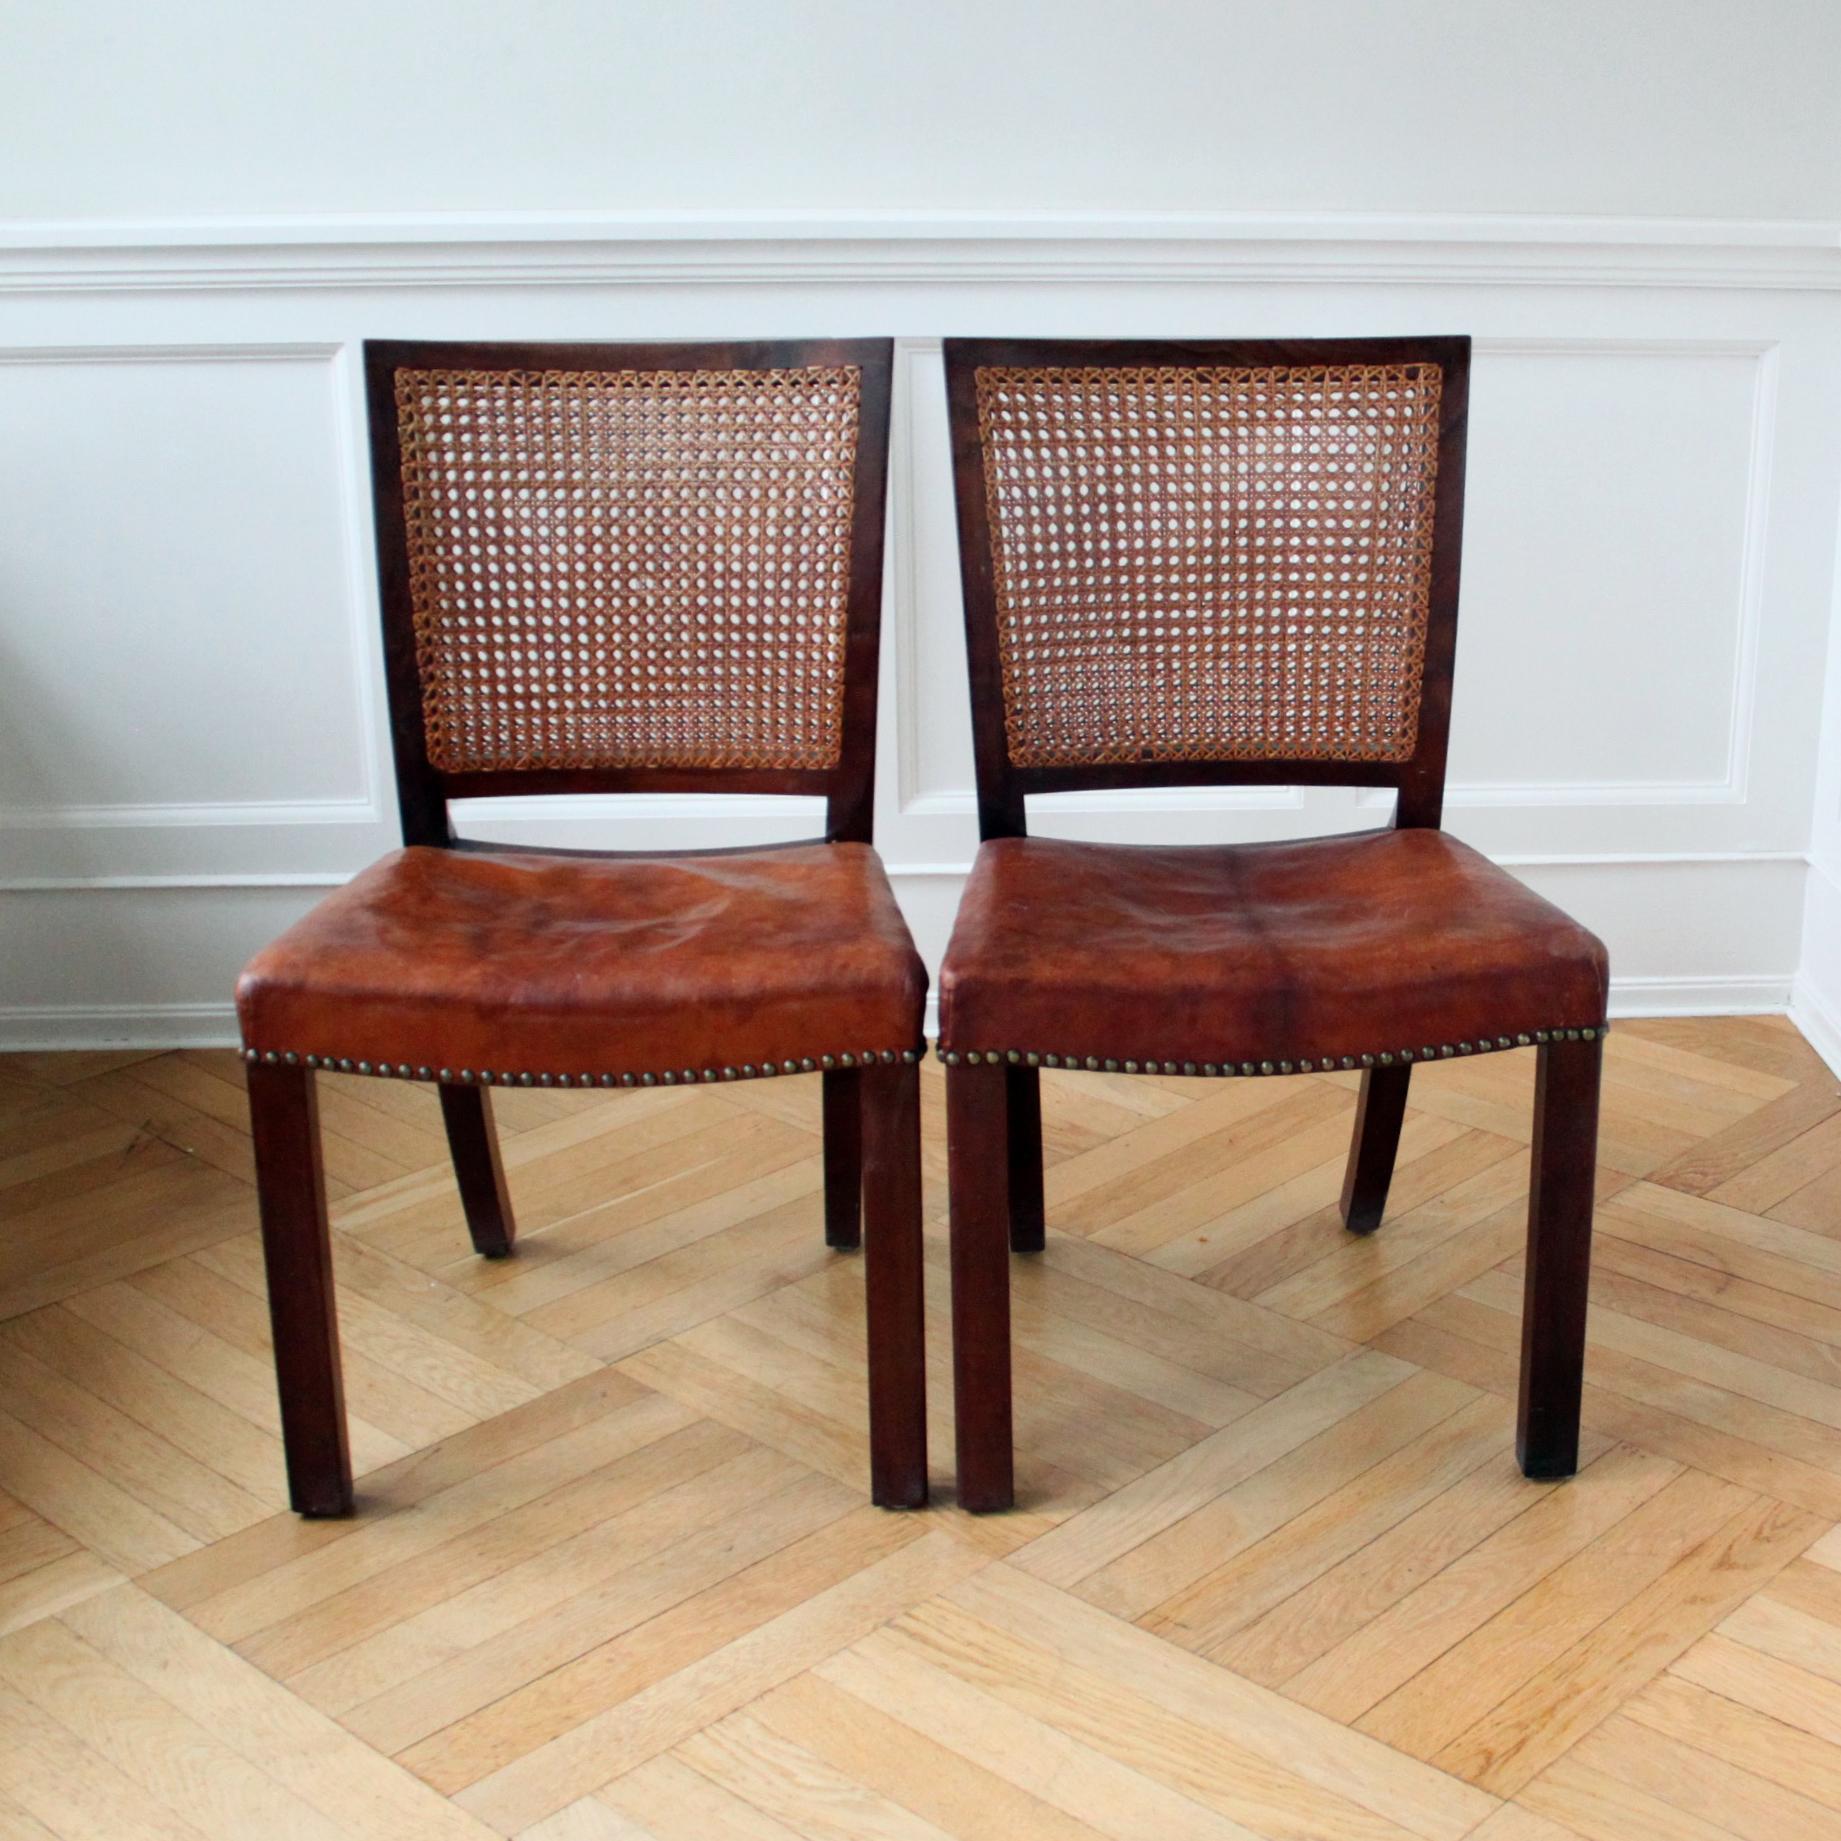 Kaare Klint & Rigmor Andersen & Rud Rasmussen   -   Frühes skandinavisches modernes Design

Ein sehr seltenes Paar Stühle, zugeschrieben Kaare Klint und Rigmor Andersen, Dänemark 1930er Jahre. 

Die Stühle bestehen aus einem Mahagoni-Rahmen mit